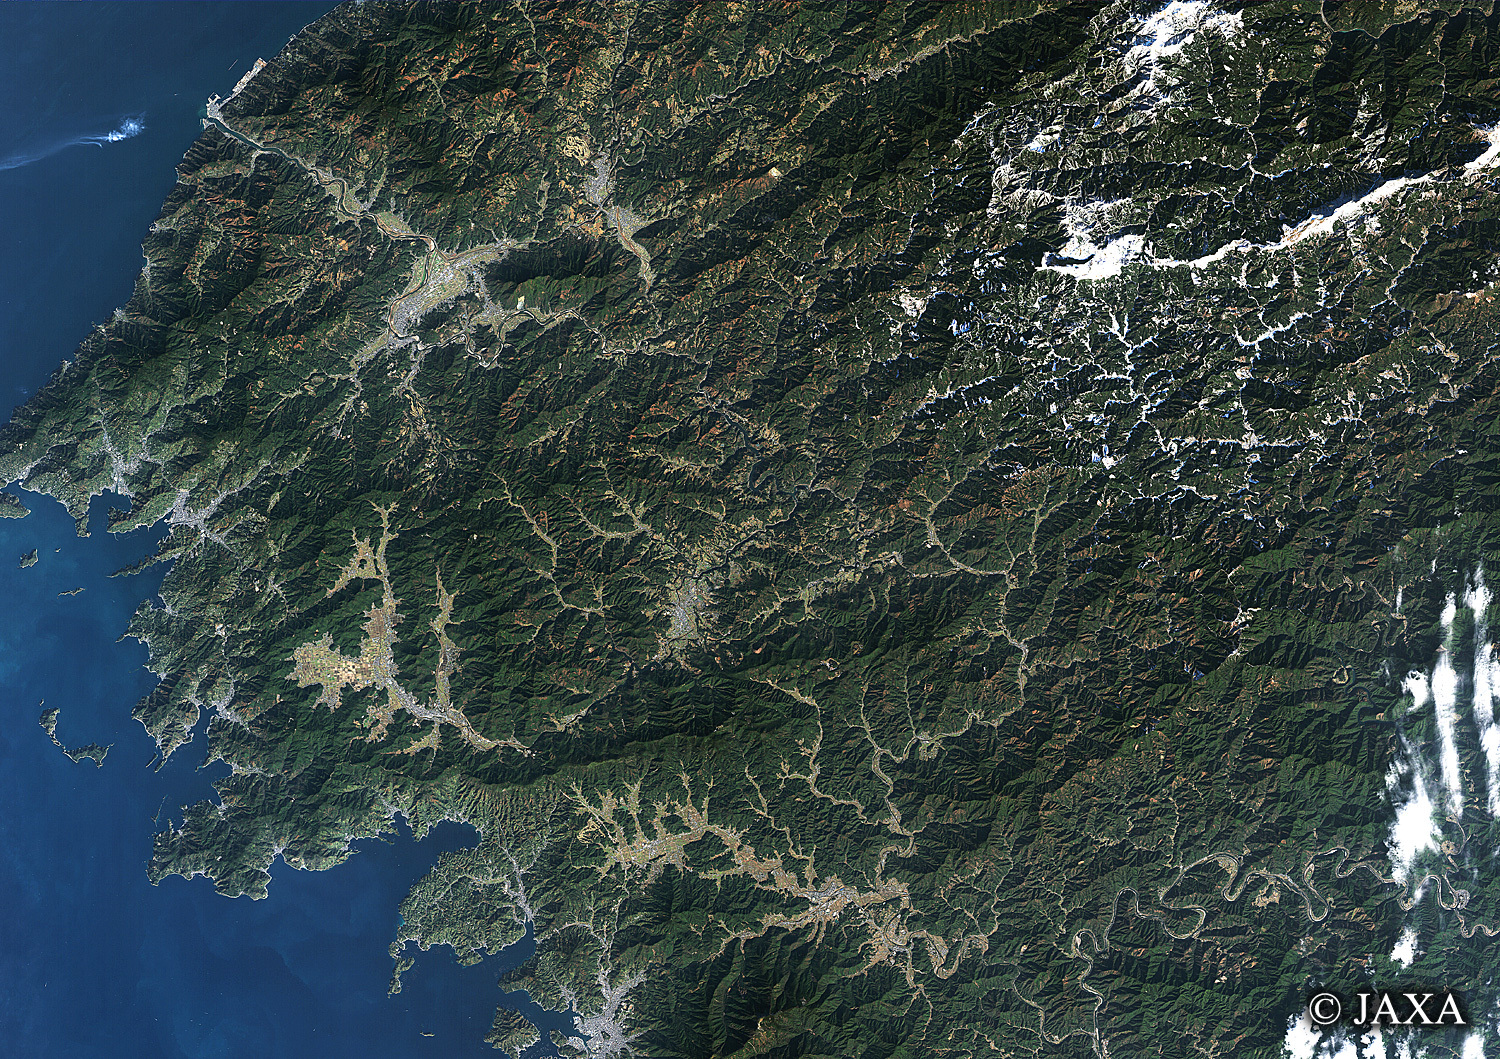 だいちから見た日本の都市 肱川:衛星画像